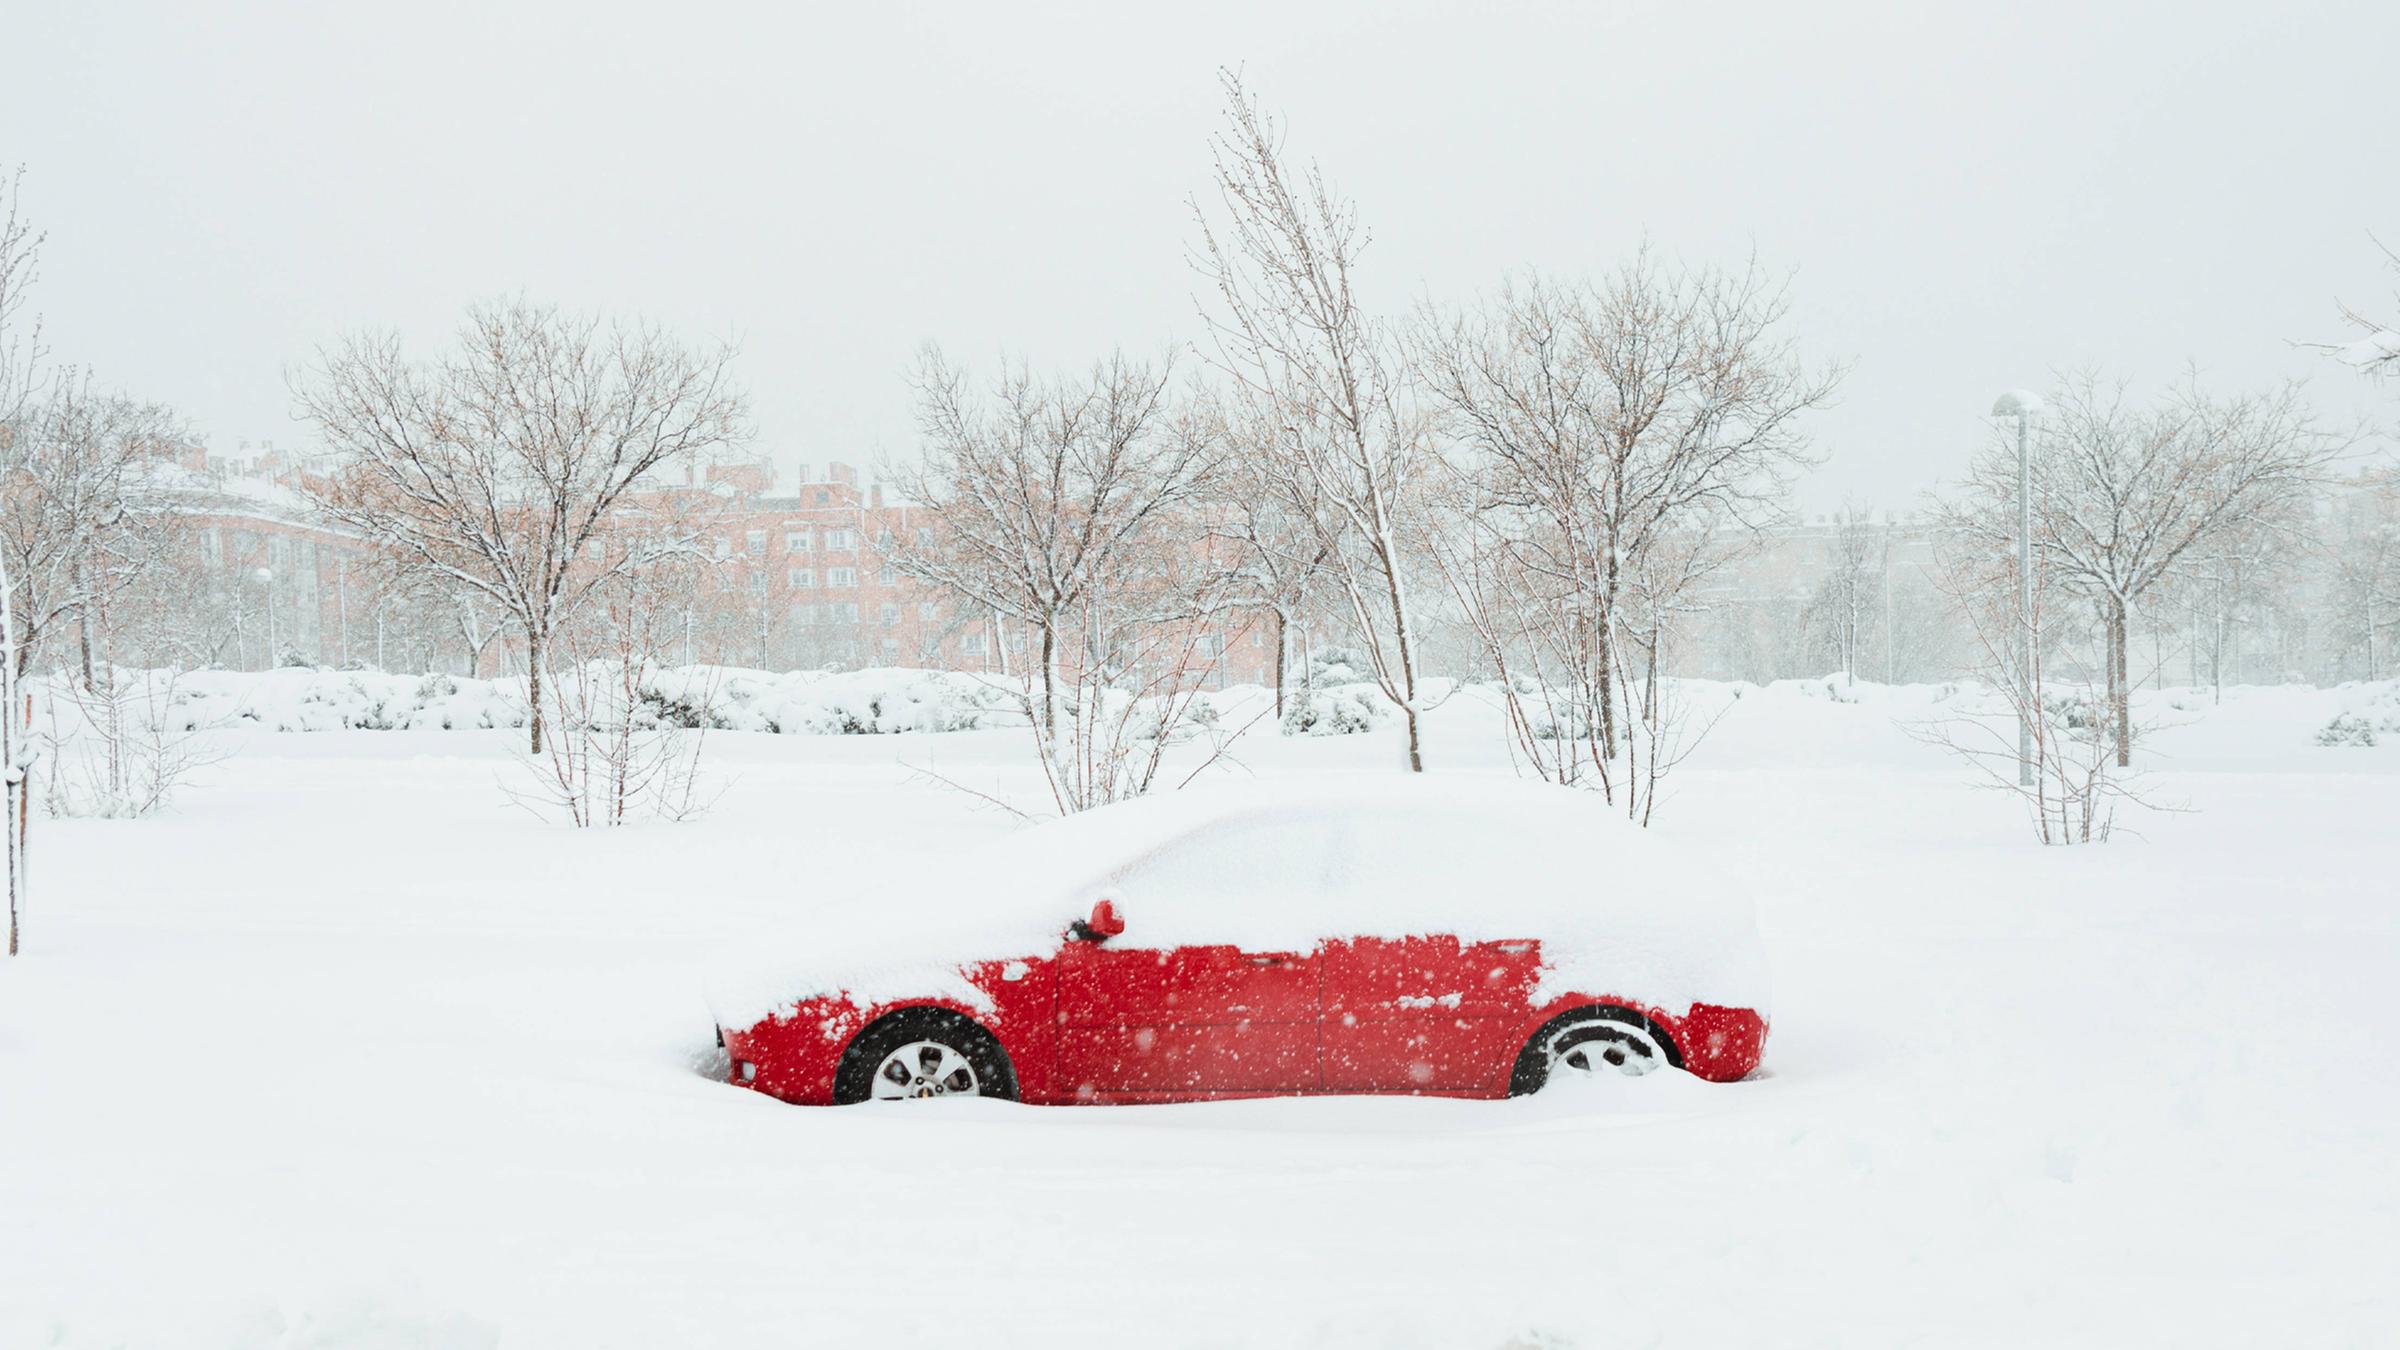 Sicheres Auto im Winter: Batterie, Reifen und Licht checken - ZDFheute